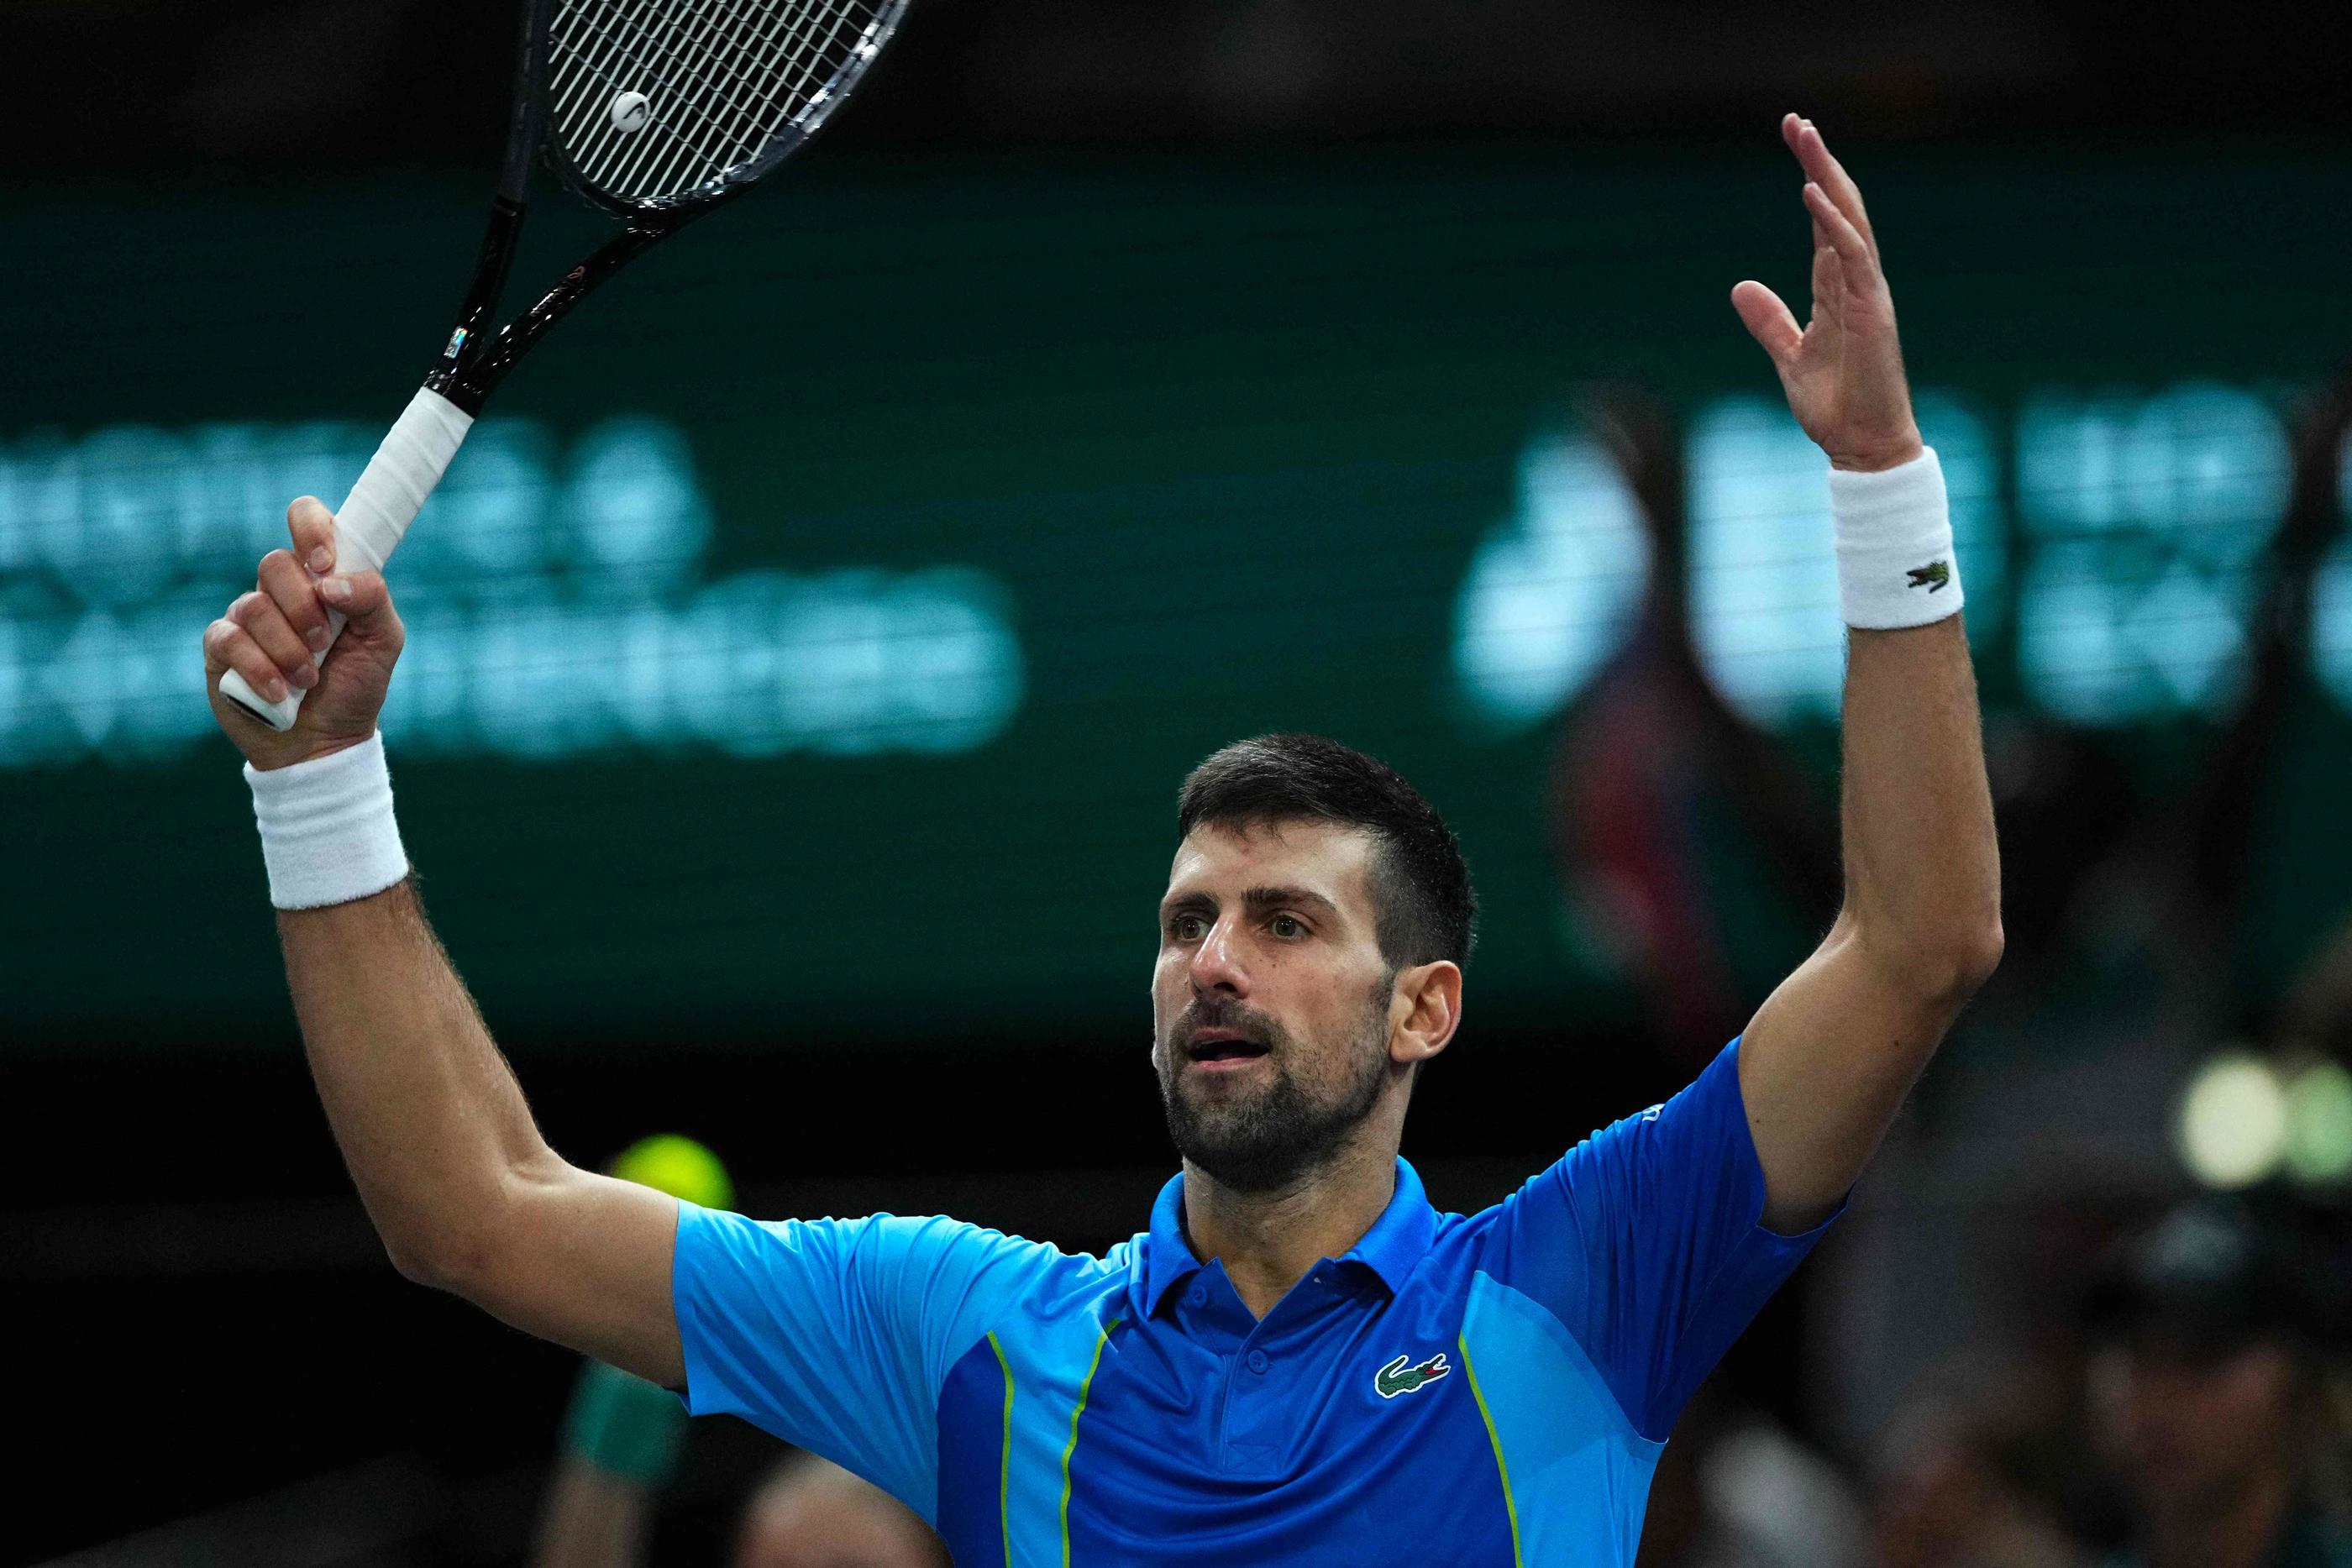 Dimanche, Novak Djokovic essaiera de décrocher un septième titre à l'Accor Arena.